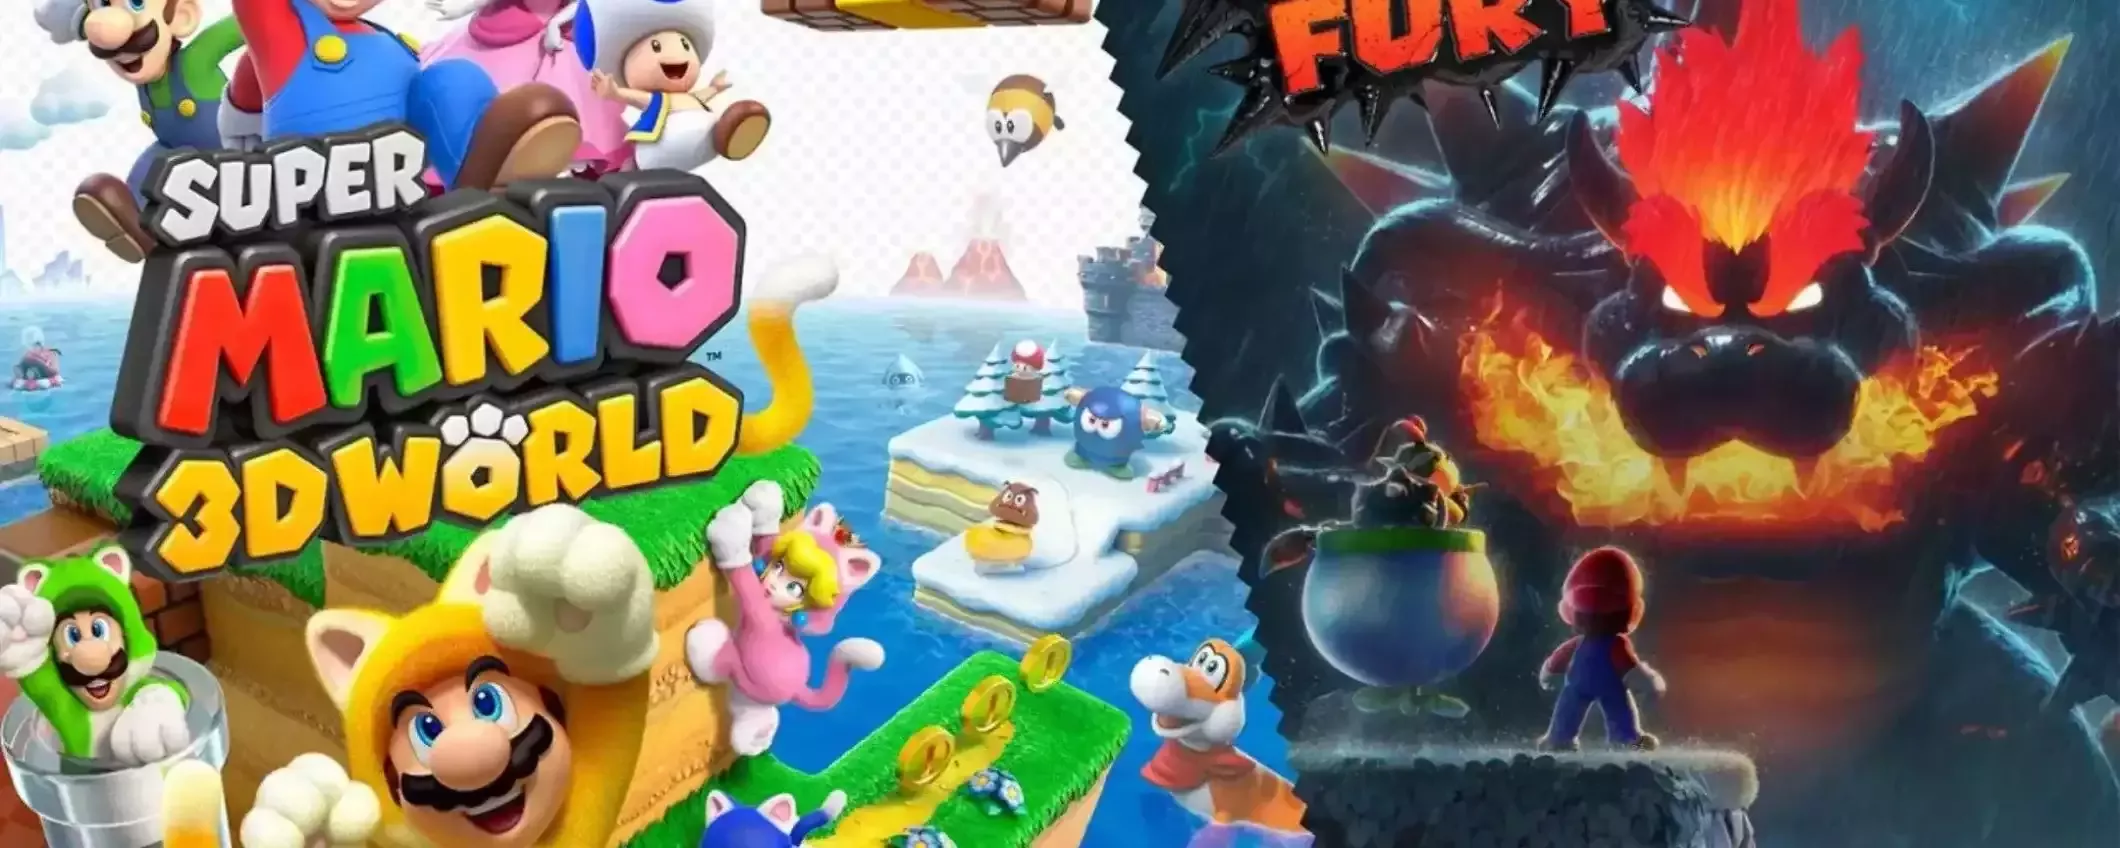 Super Mario 3D World + Bowser's Fury: il gioco più bello, oggi in sconto su Amazon